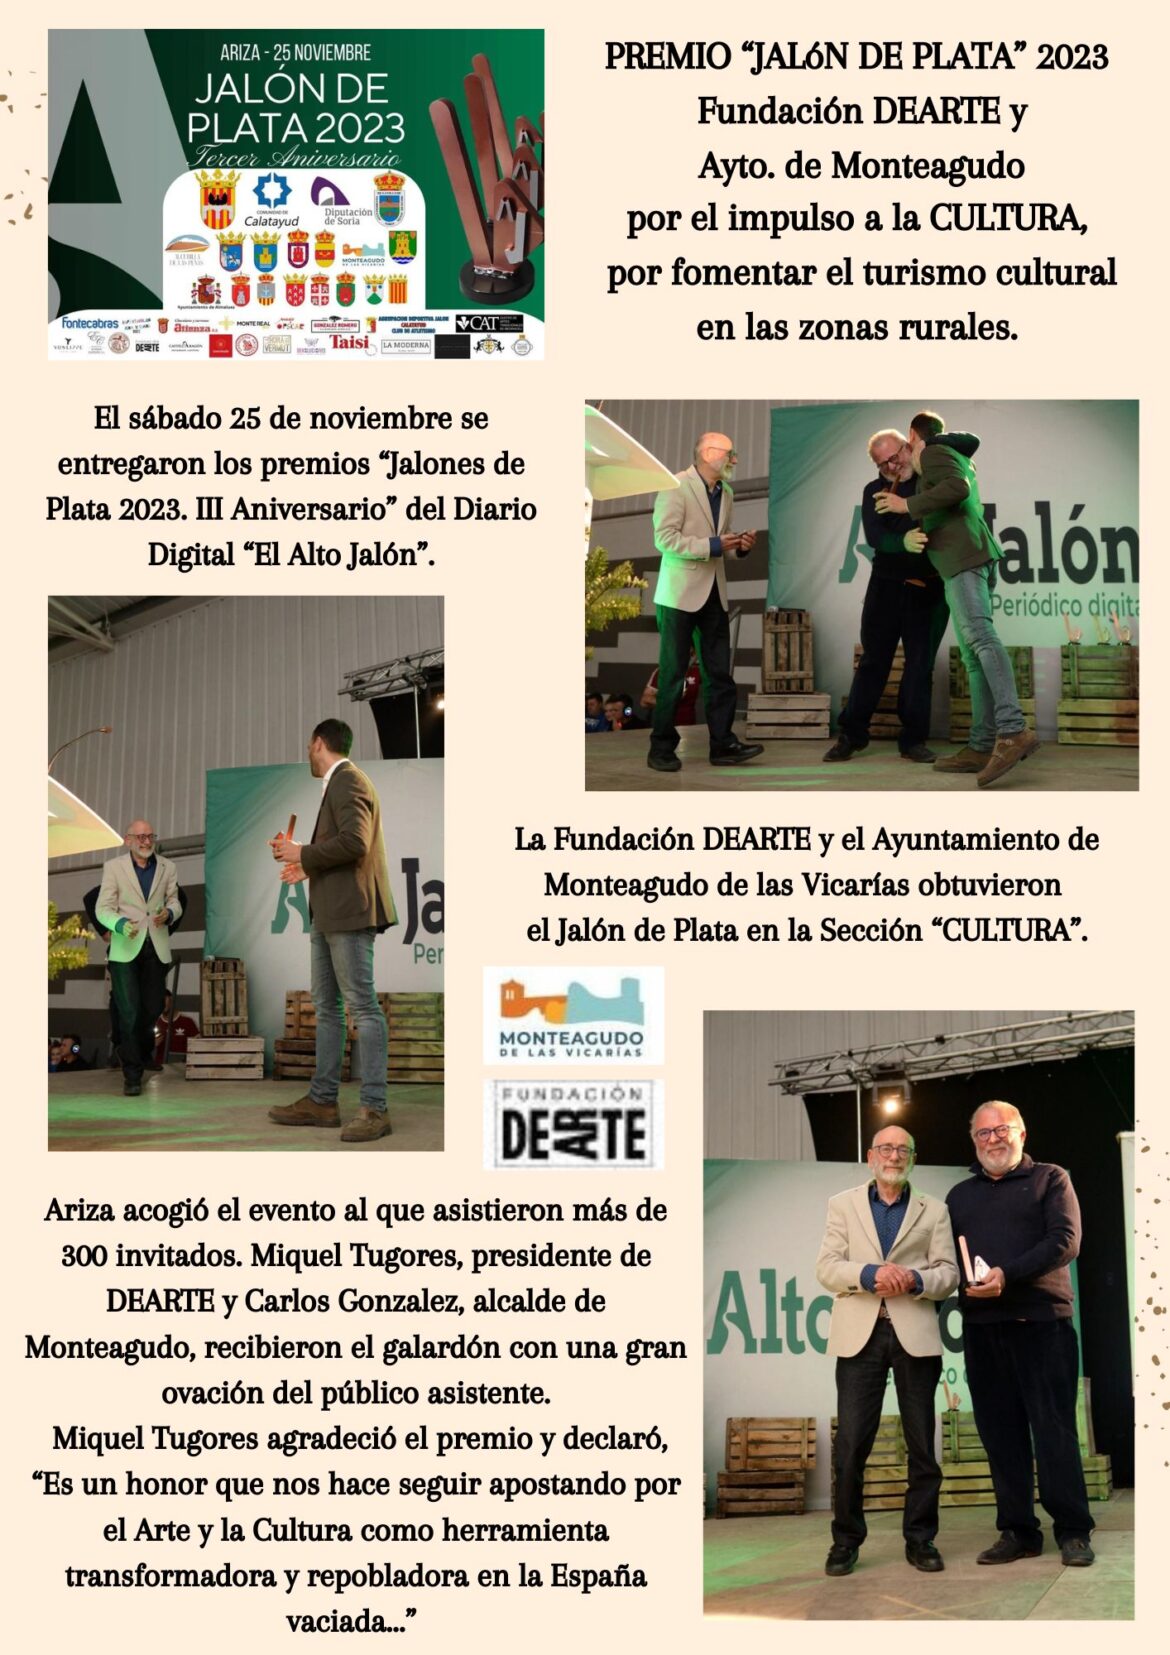 Premio “JALÓN DE PLATA 2023” a Fundación DEARTE Y Ayto de Monteagudo de las Vicarías.